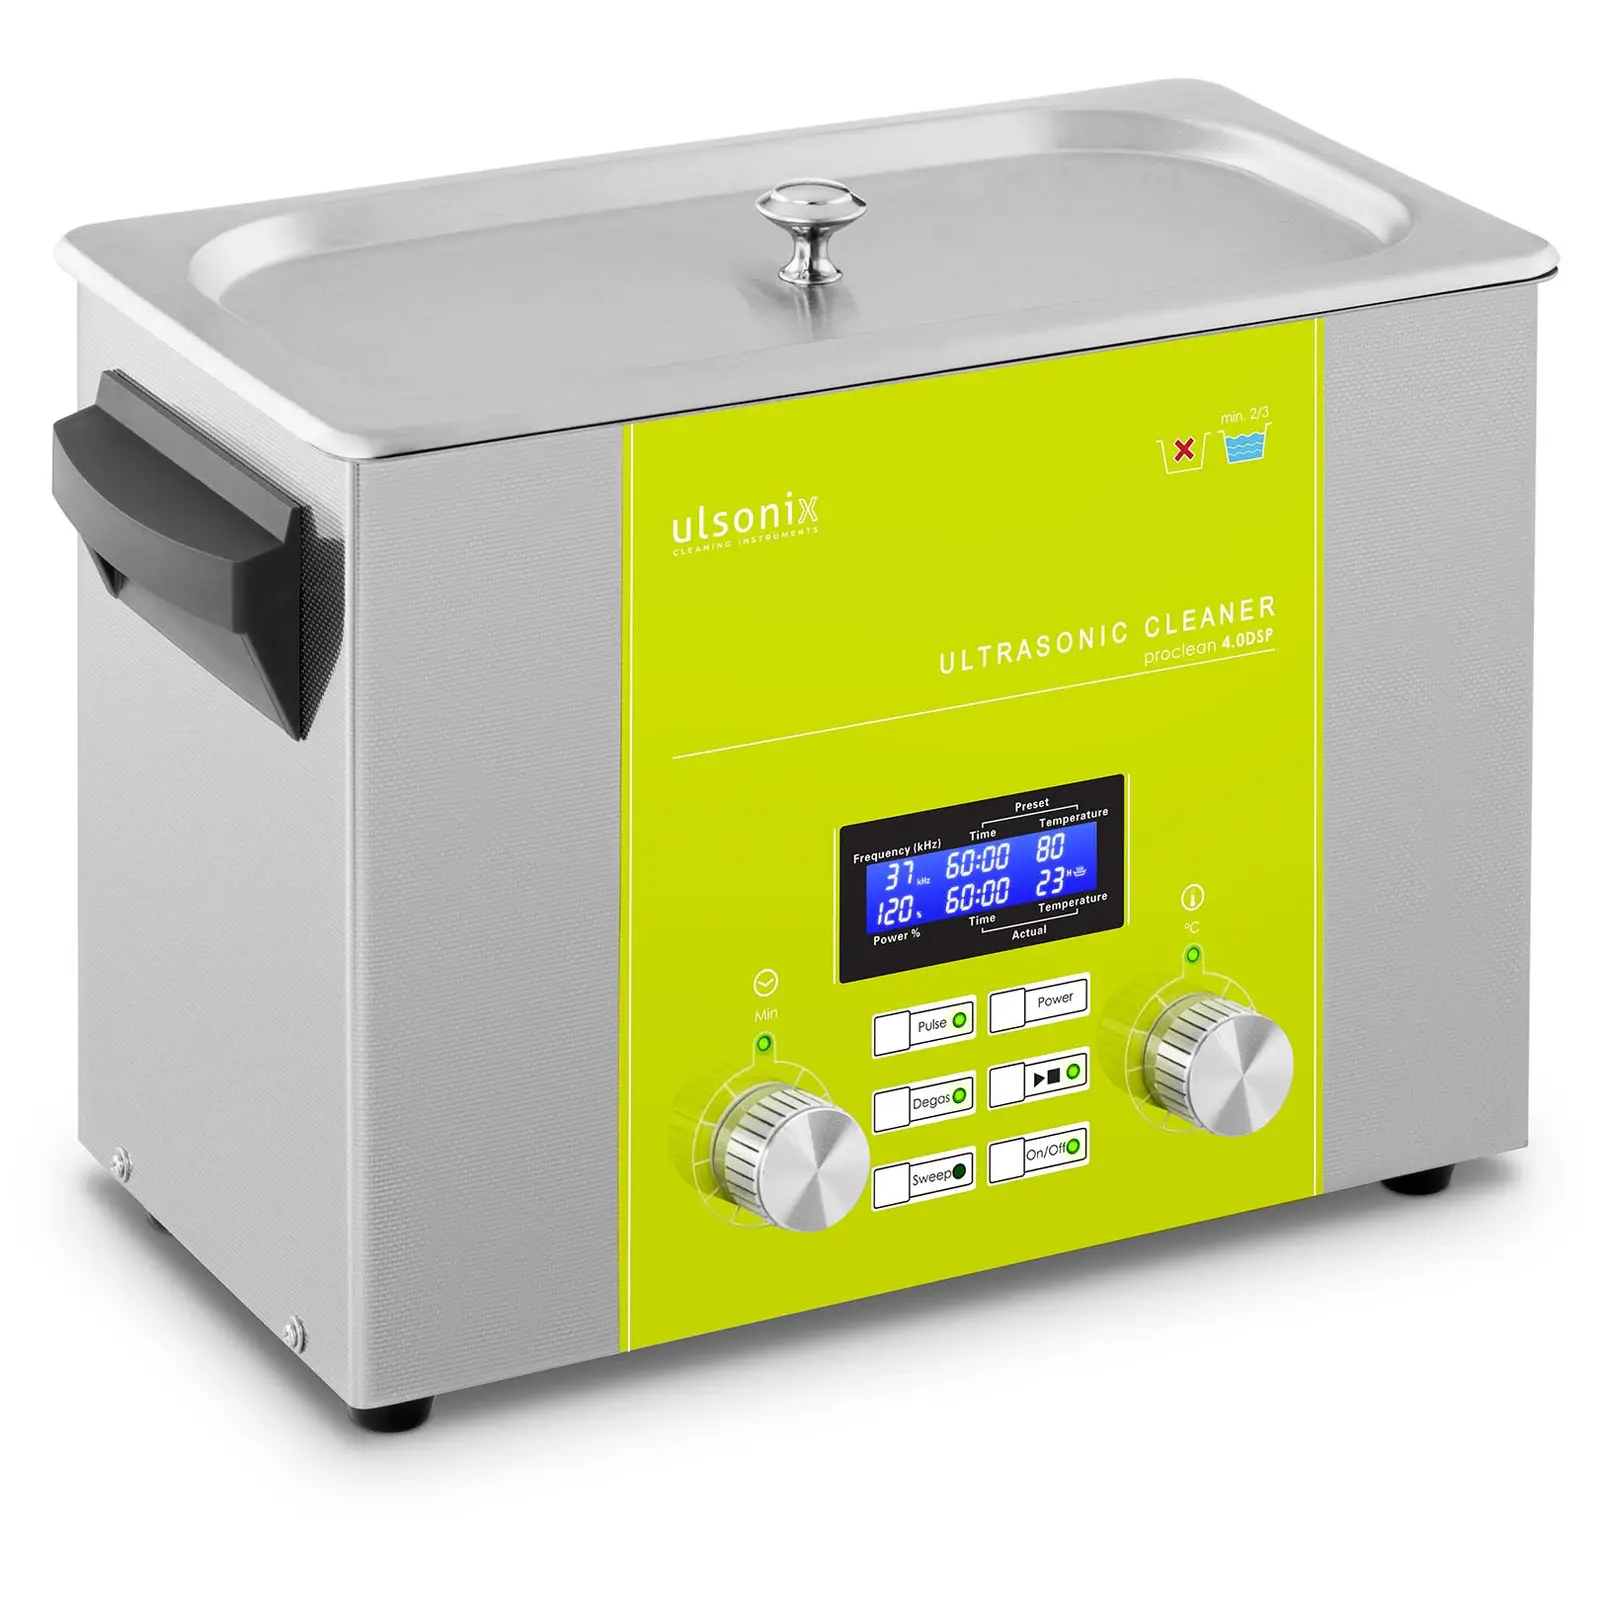 Ultrahangos tisztító - 4 liter - Degas - Sweep - Puls